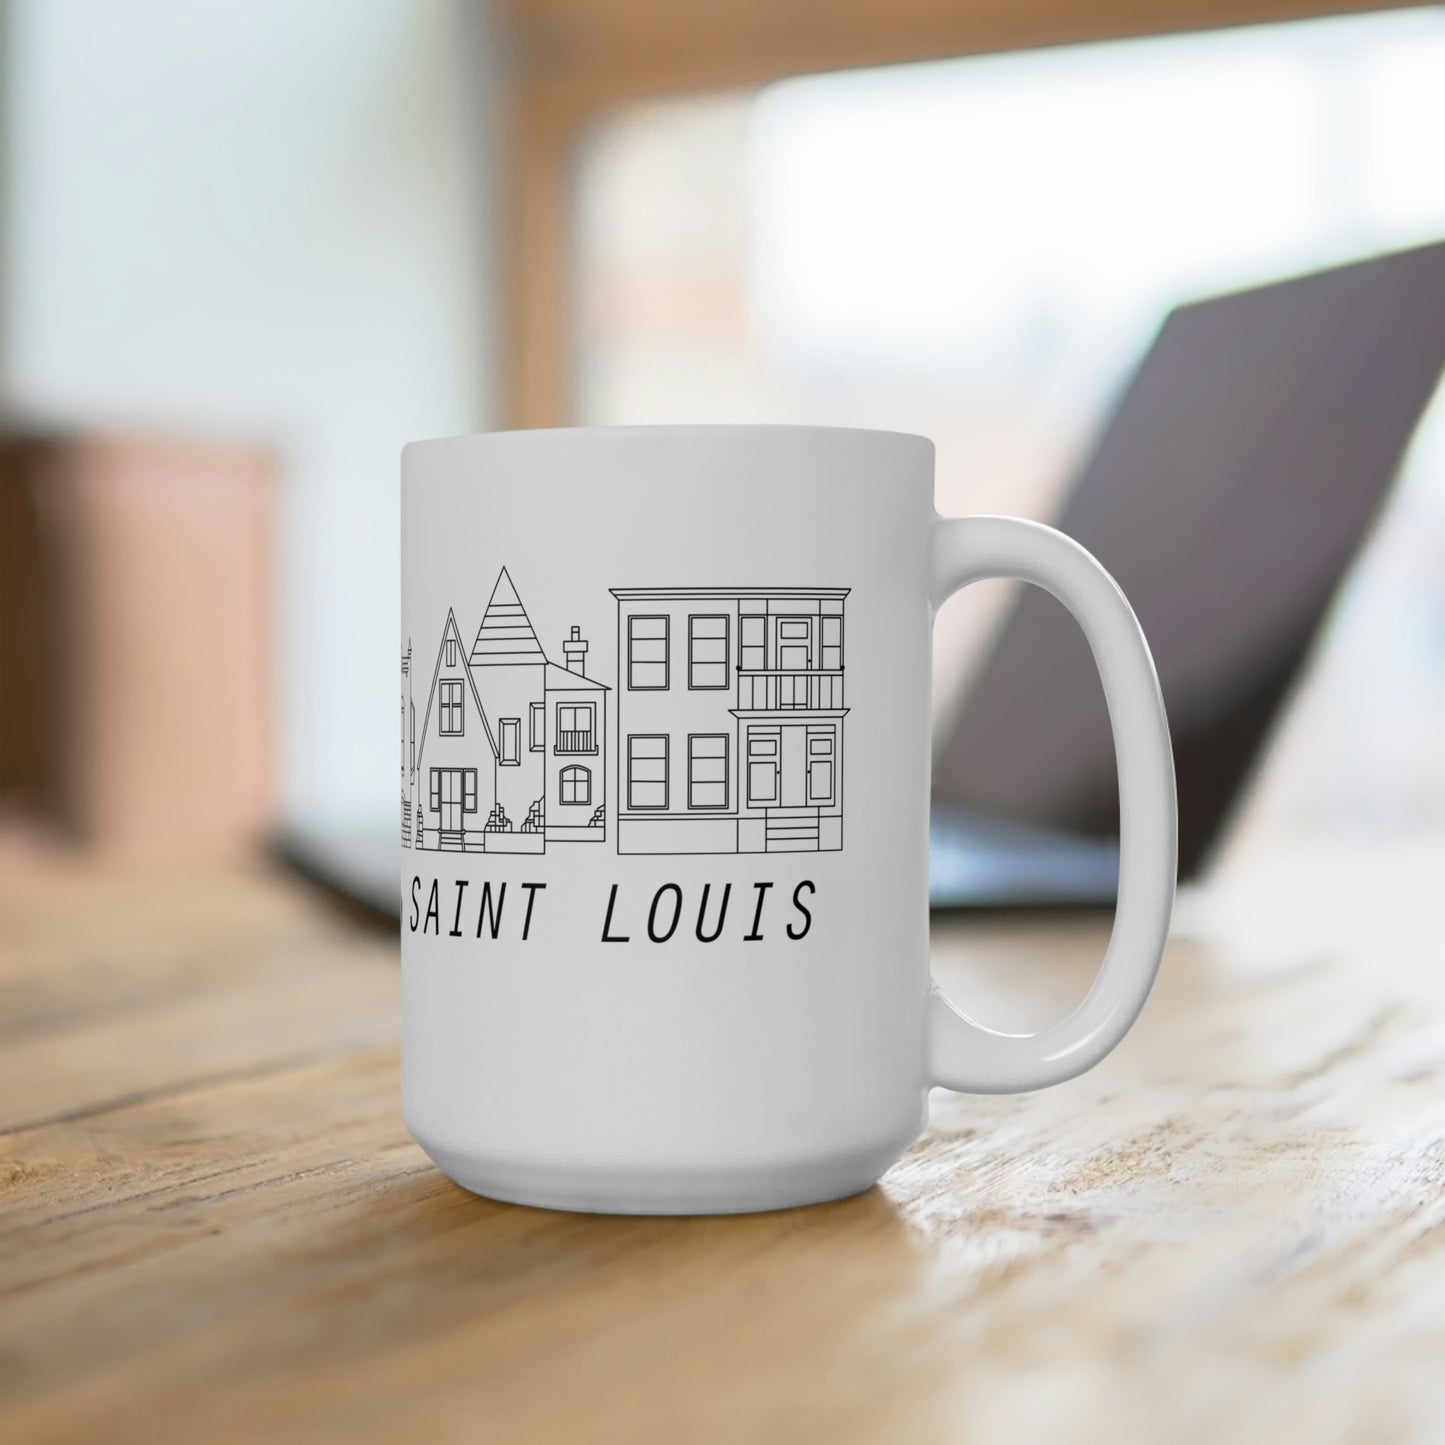 South City Saint Louis Ceramic Mug 15oz